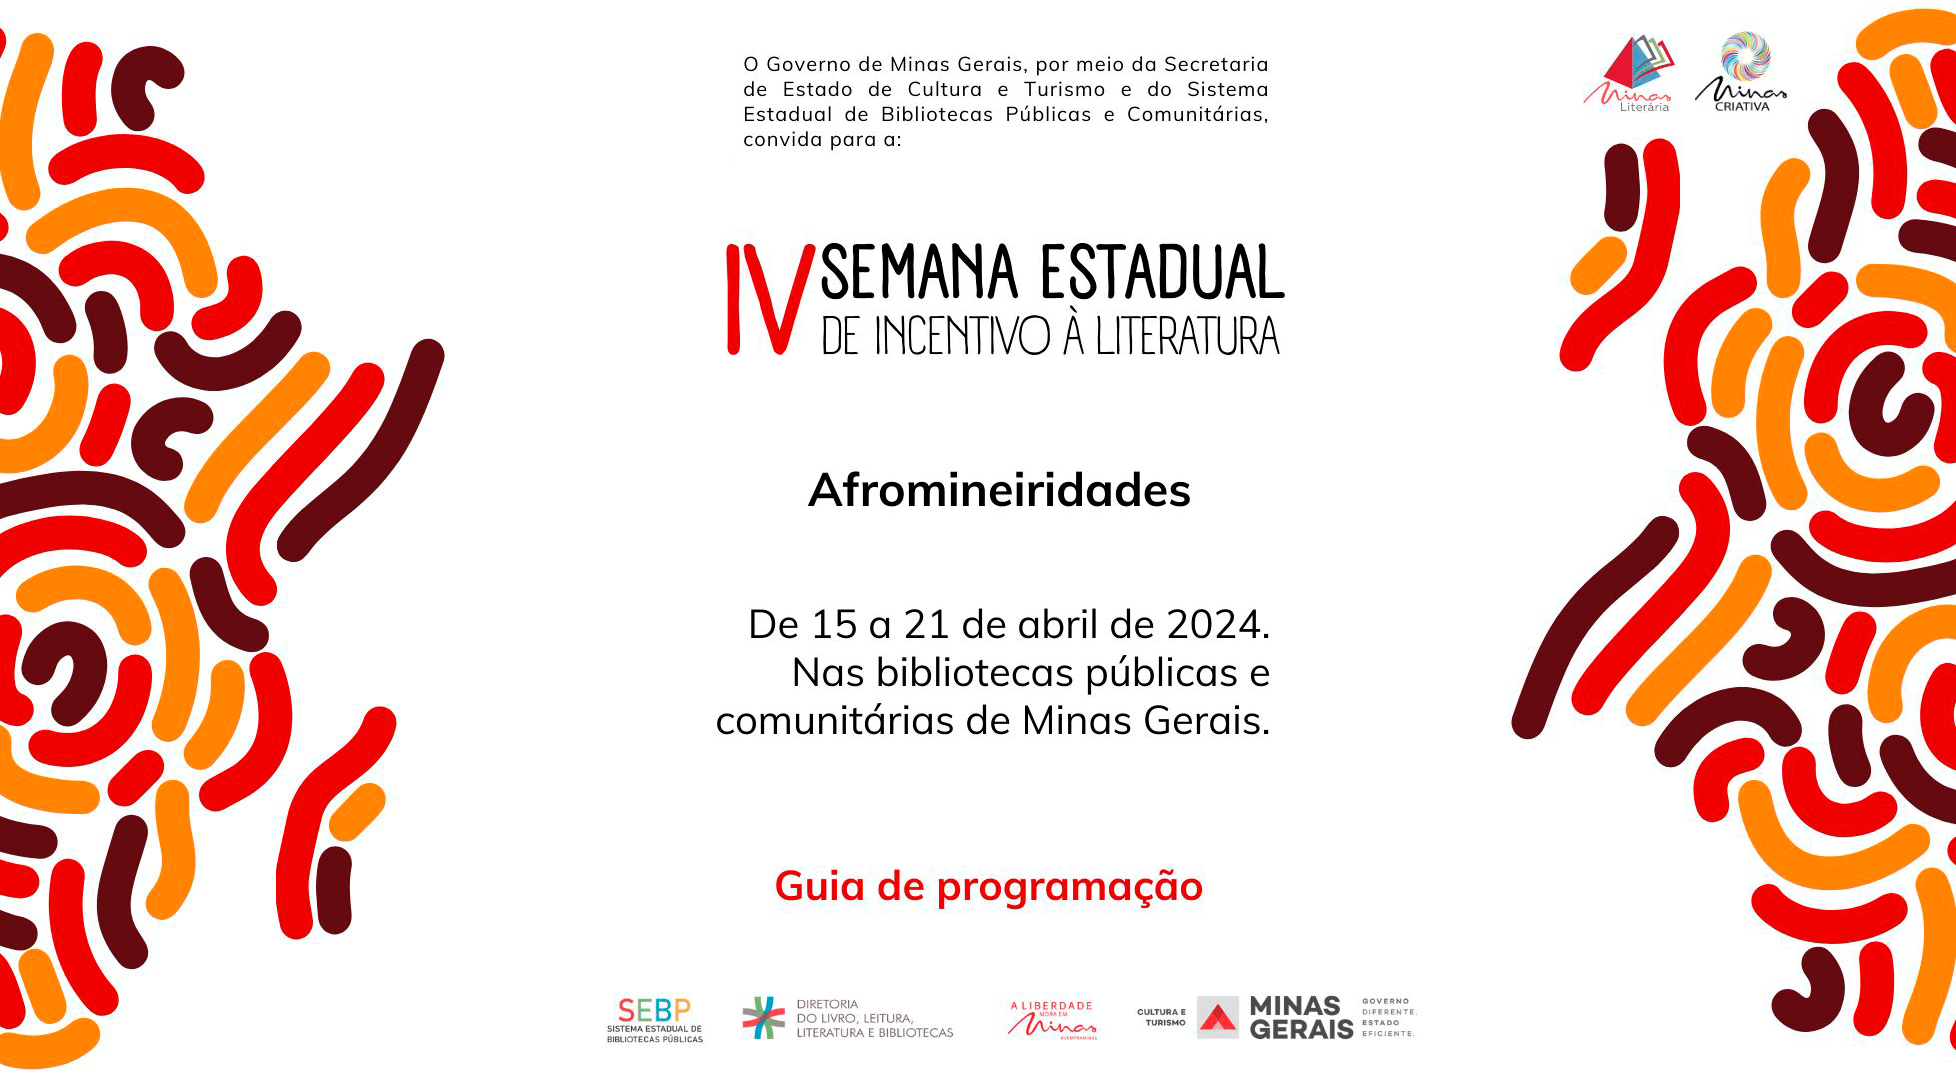 Governo de Minas abre Semana Estadual de Incentivo à Literatura na segunda (15) com tema Afromineiridades